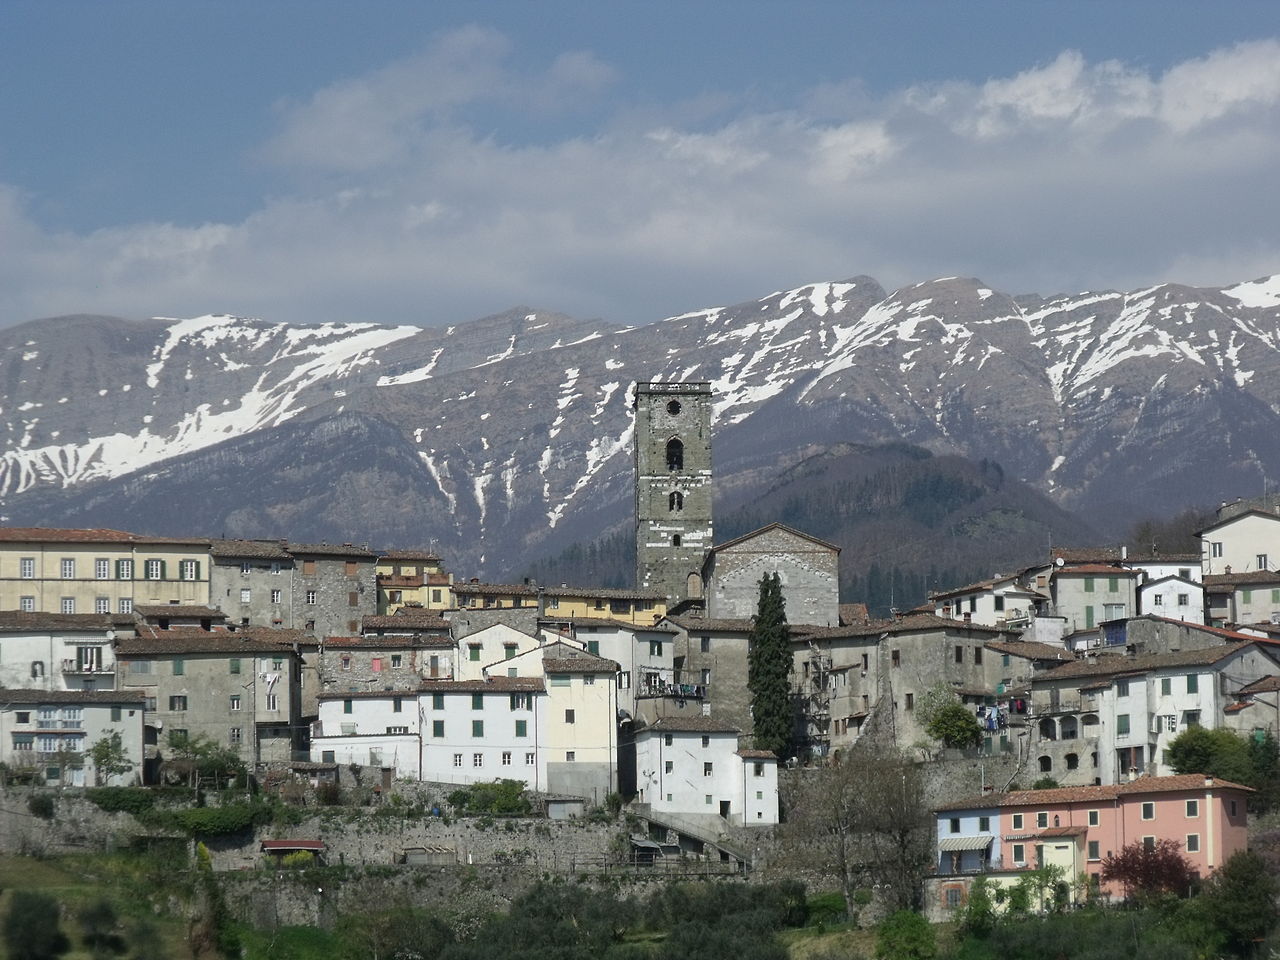 View of Coreglia Antelminelli